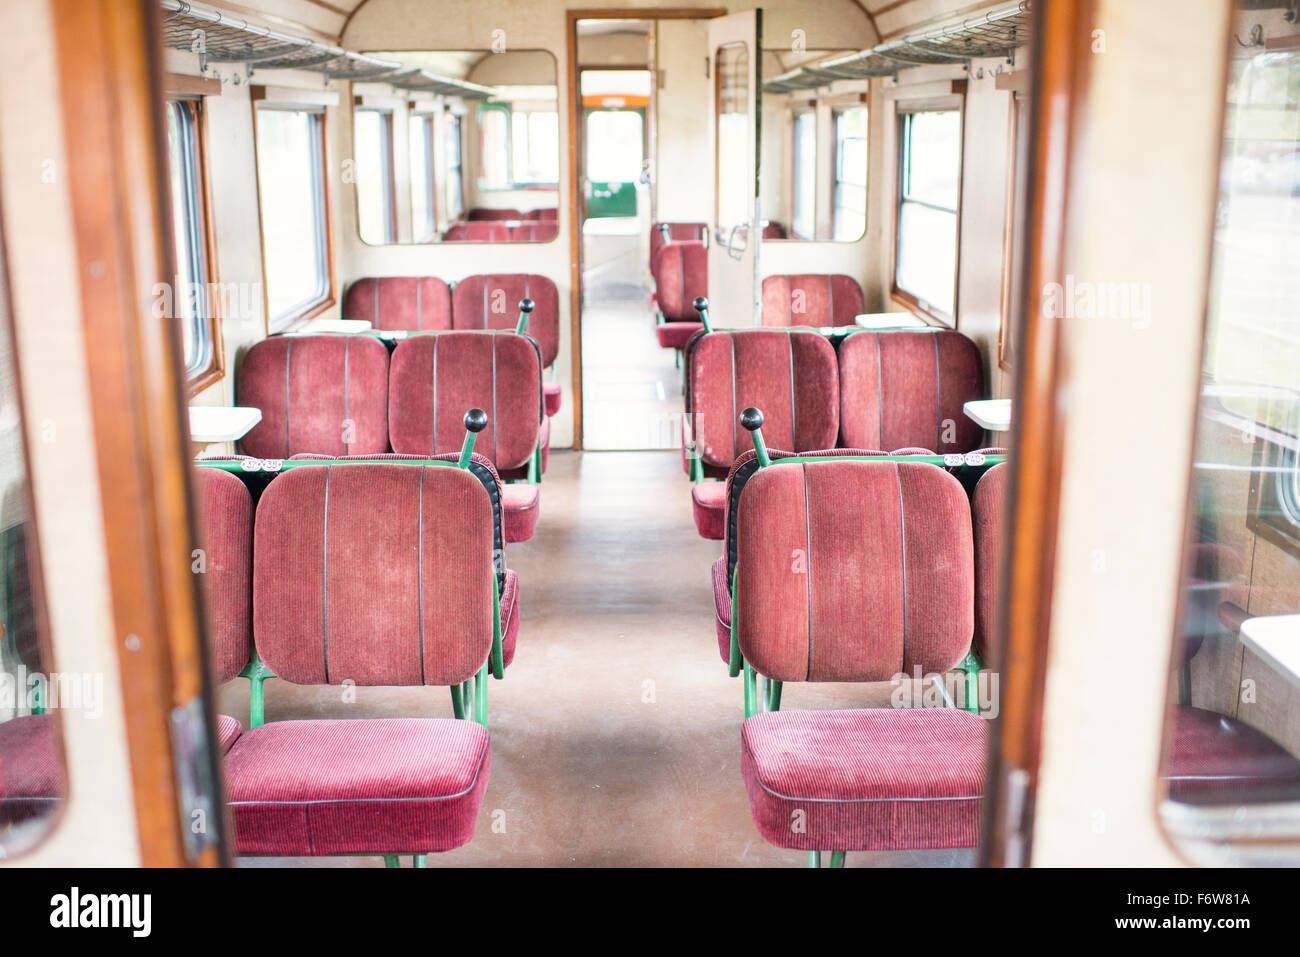 L'intérieur du train à l'ancienne montrant des sièges vides. Banque D'Images